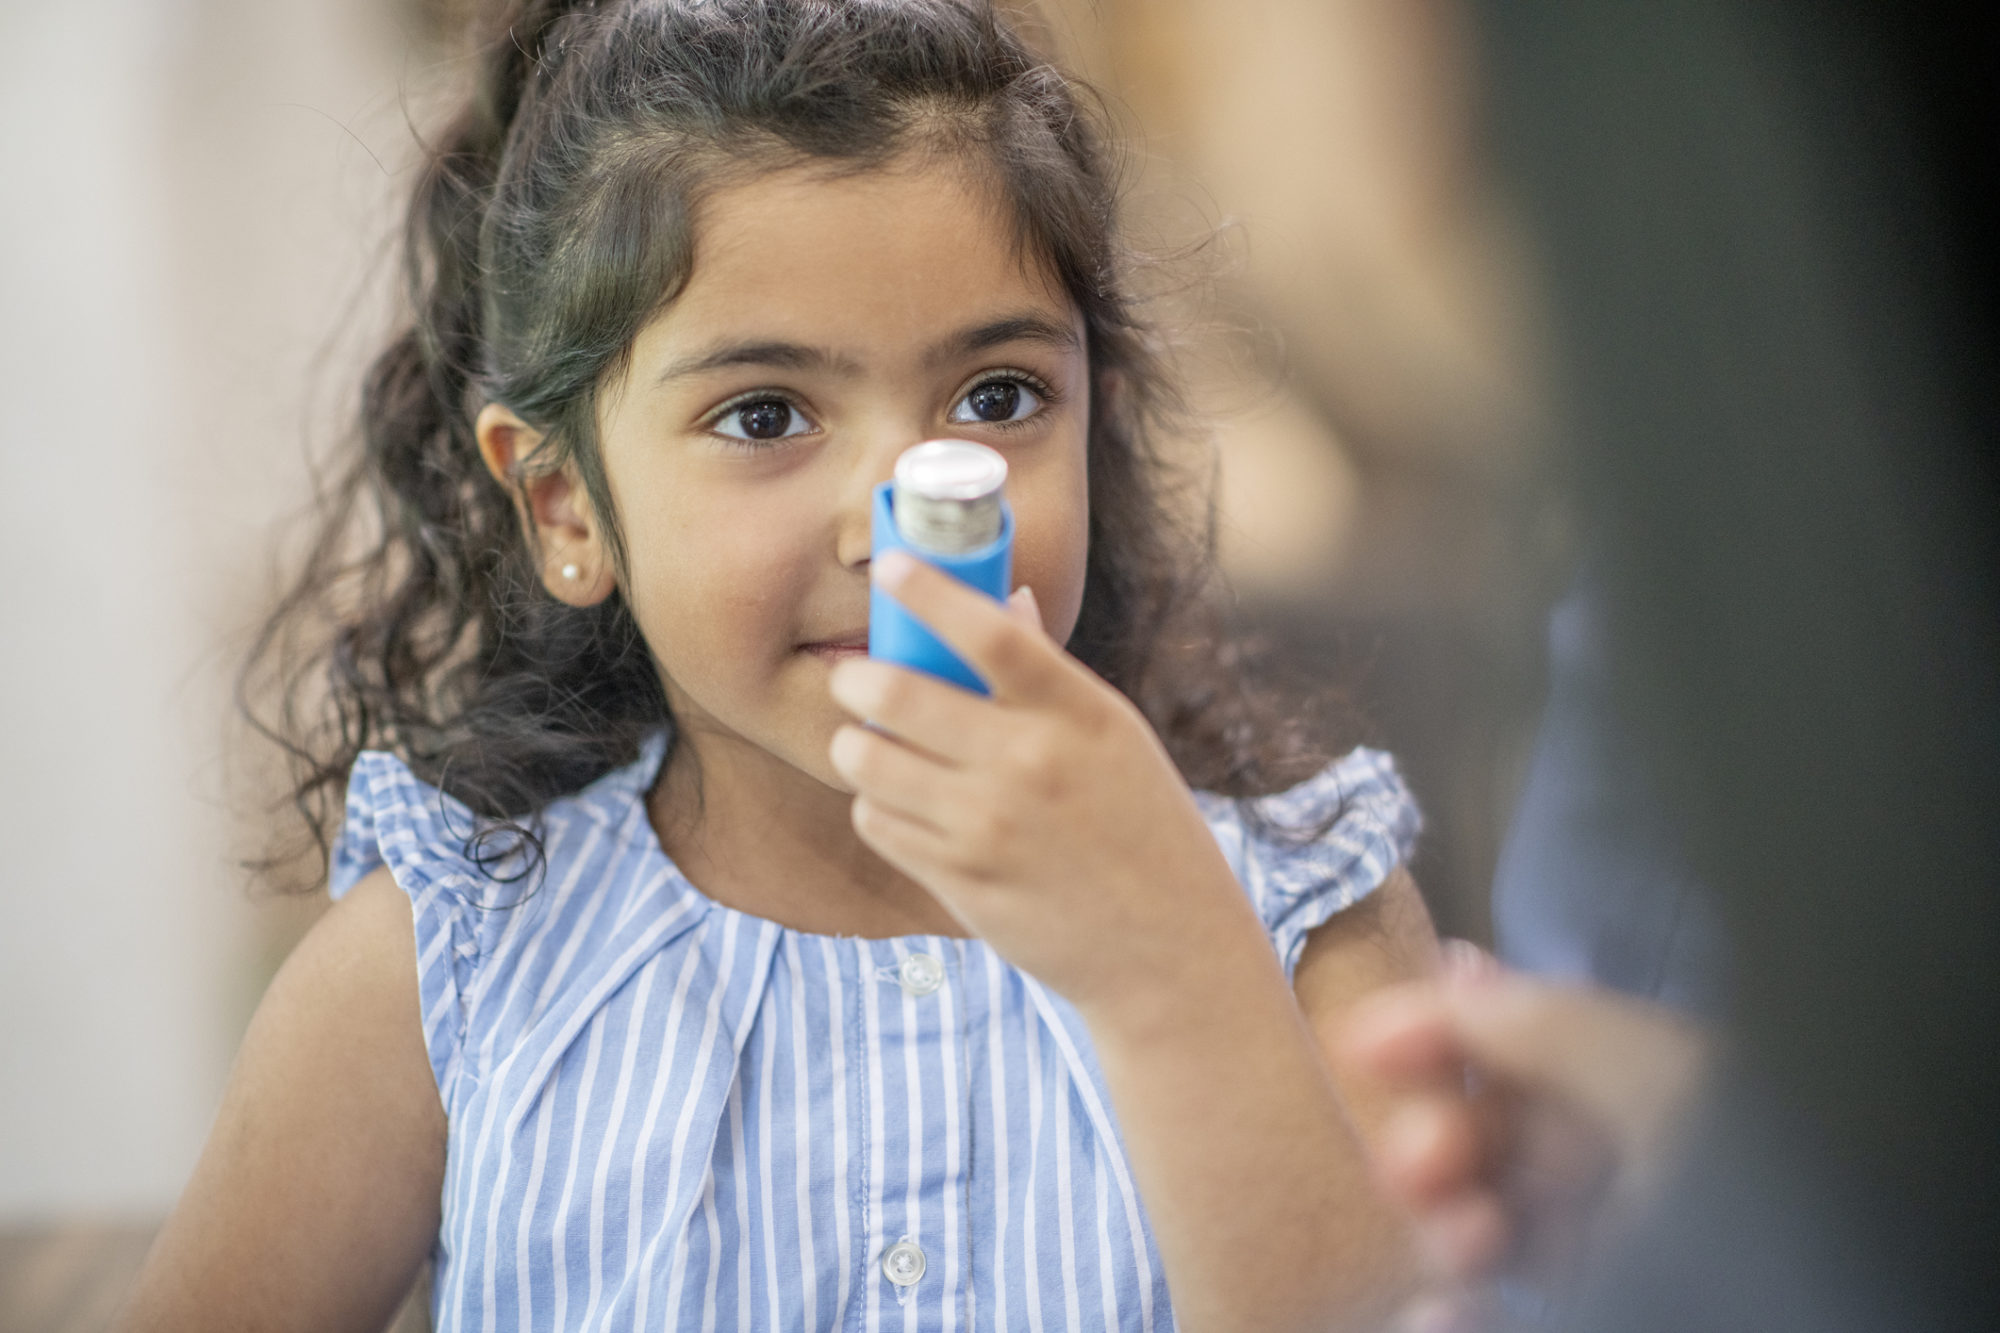 A girl using an inhaler